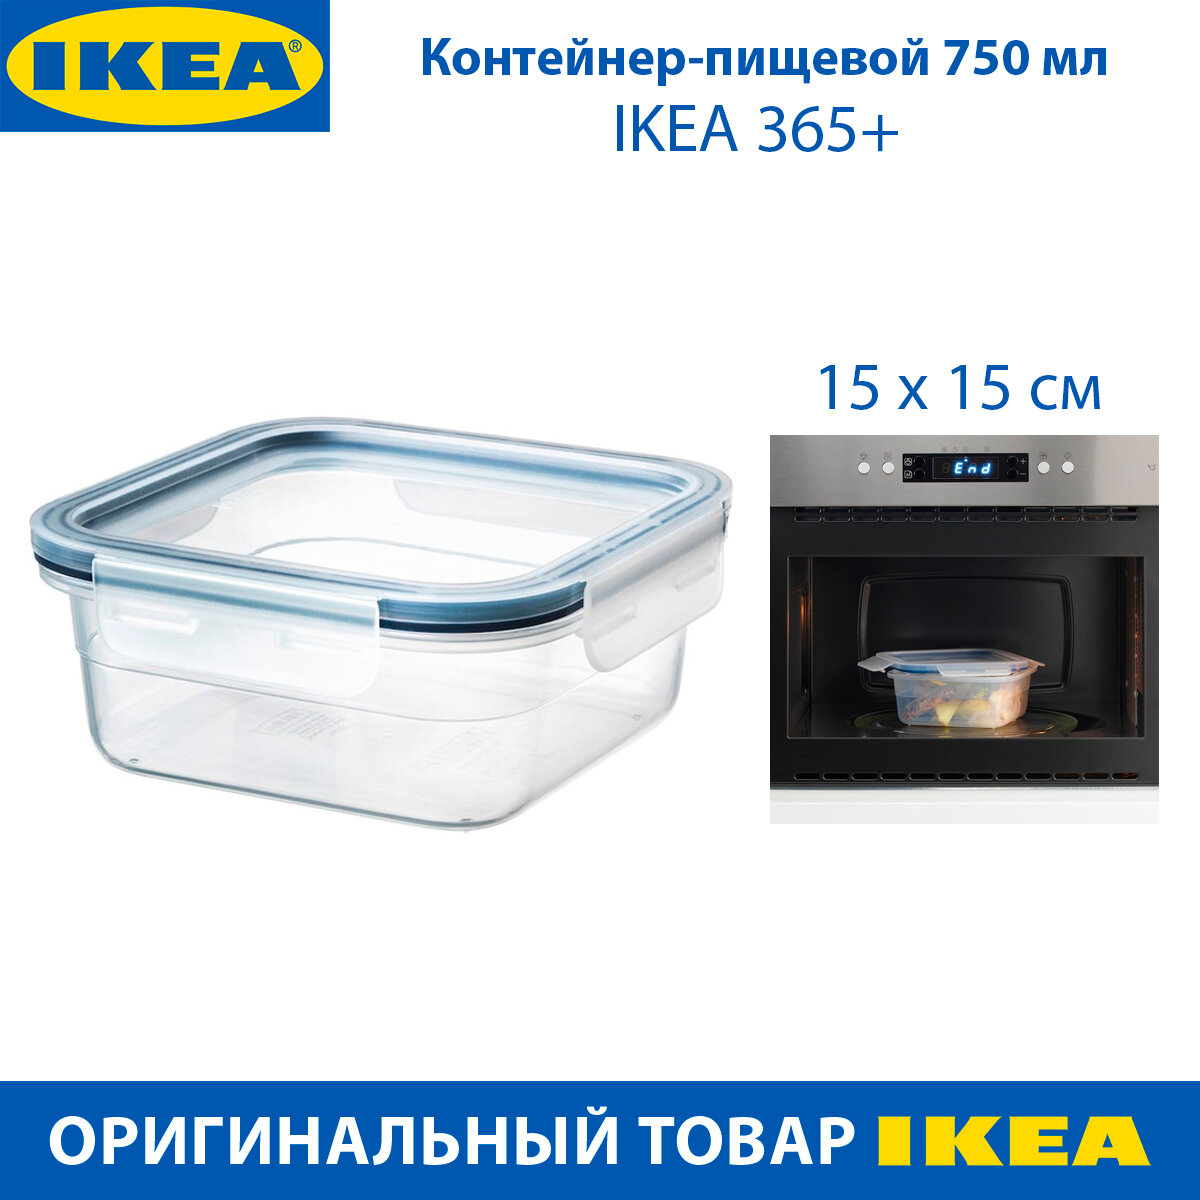 Контейнер-пищевой IKEA - 365+, с крышкой, 0.75 л, прямоугольный, пластик, 1 шт